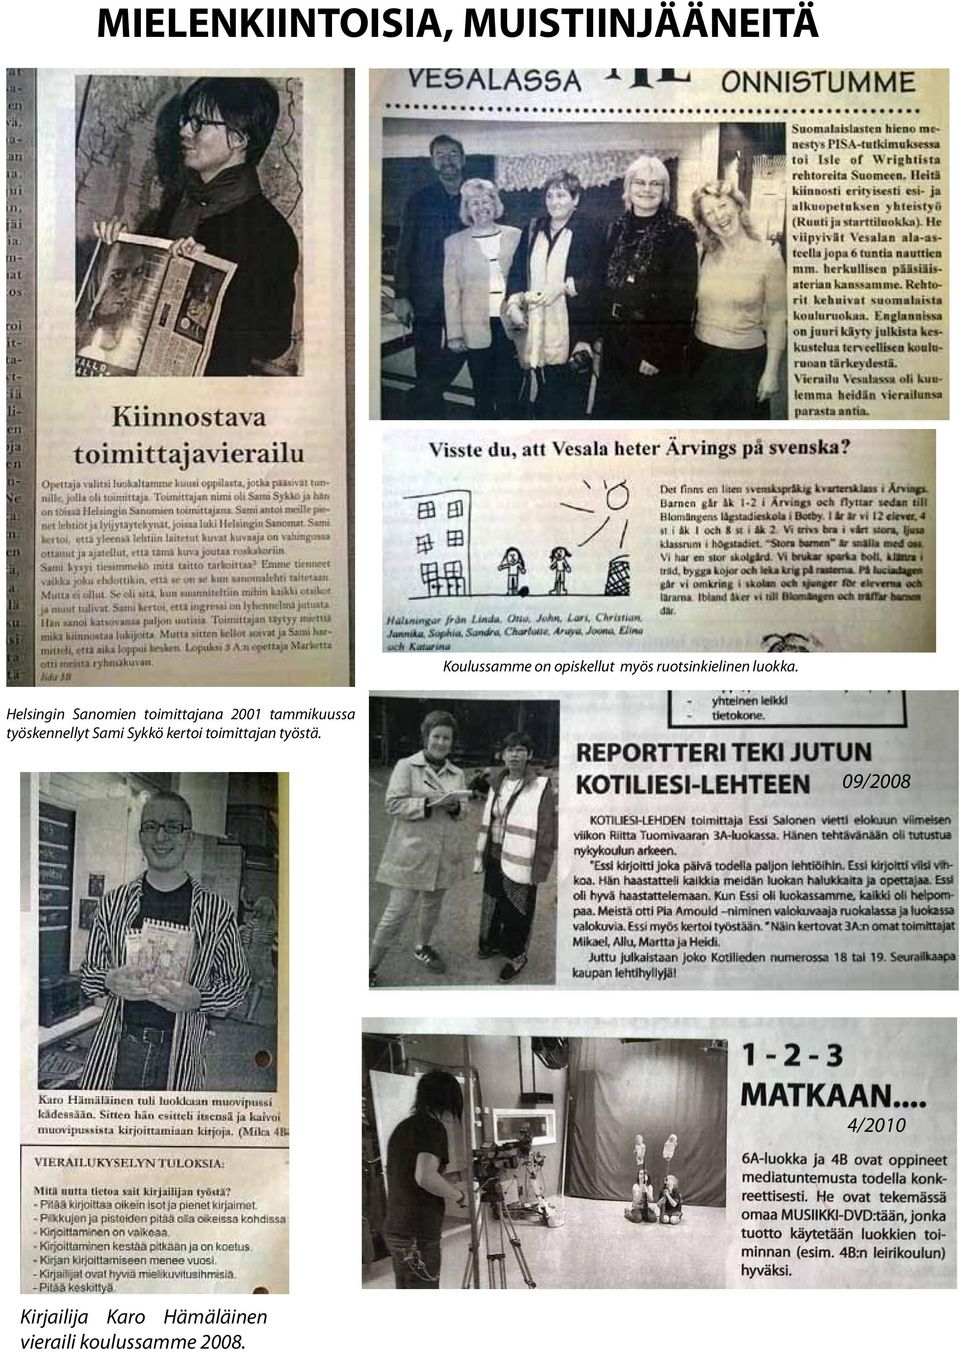 Helsingin Sanomien toimittajana 2001 tammikuussa työskennellyt